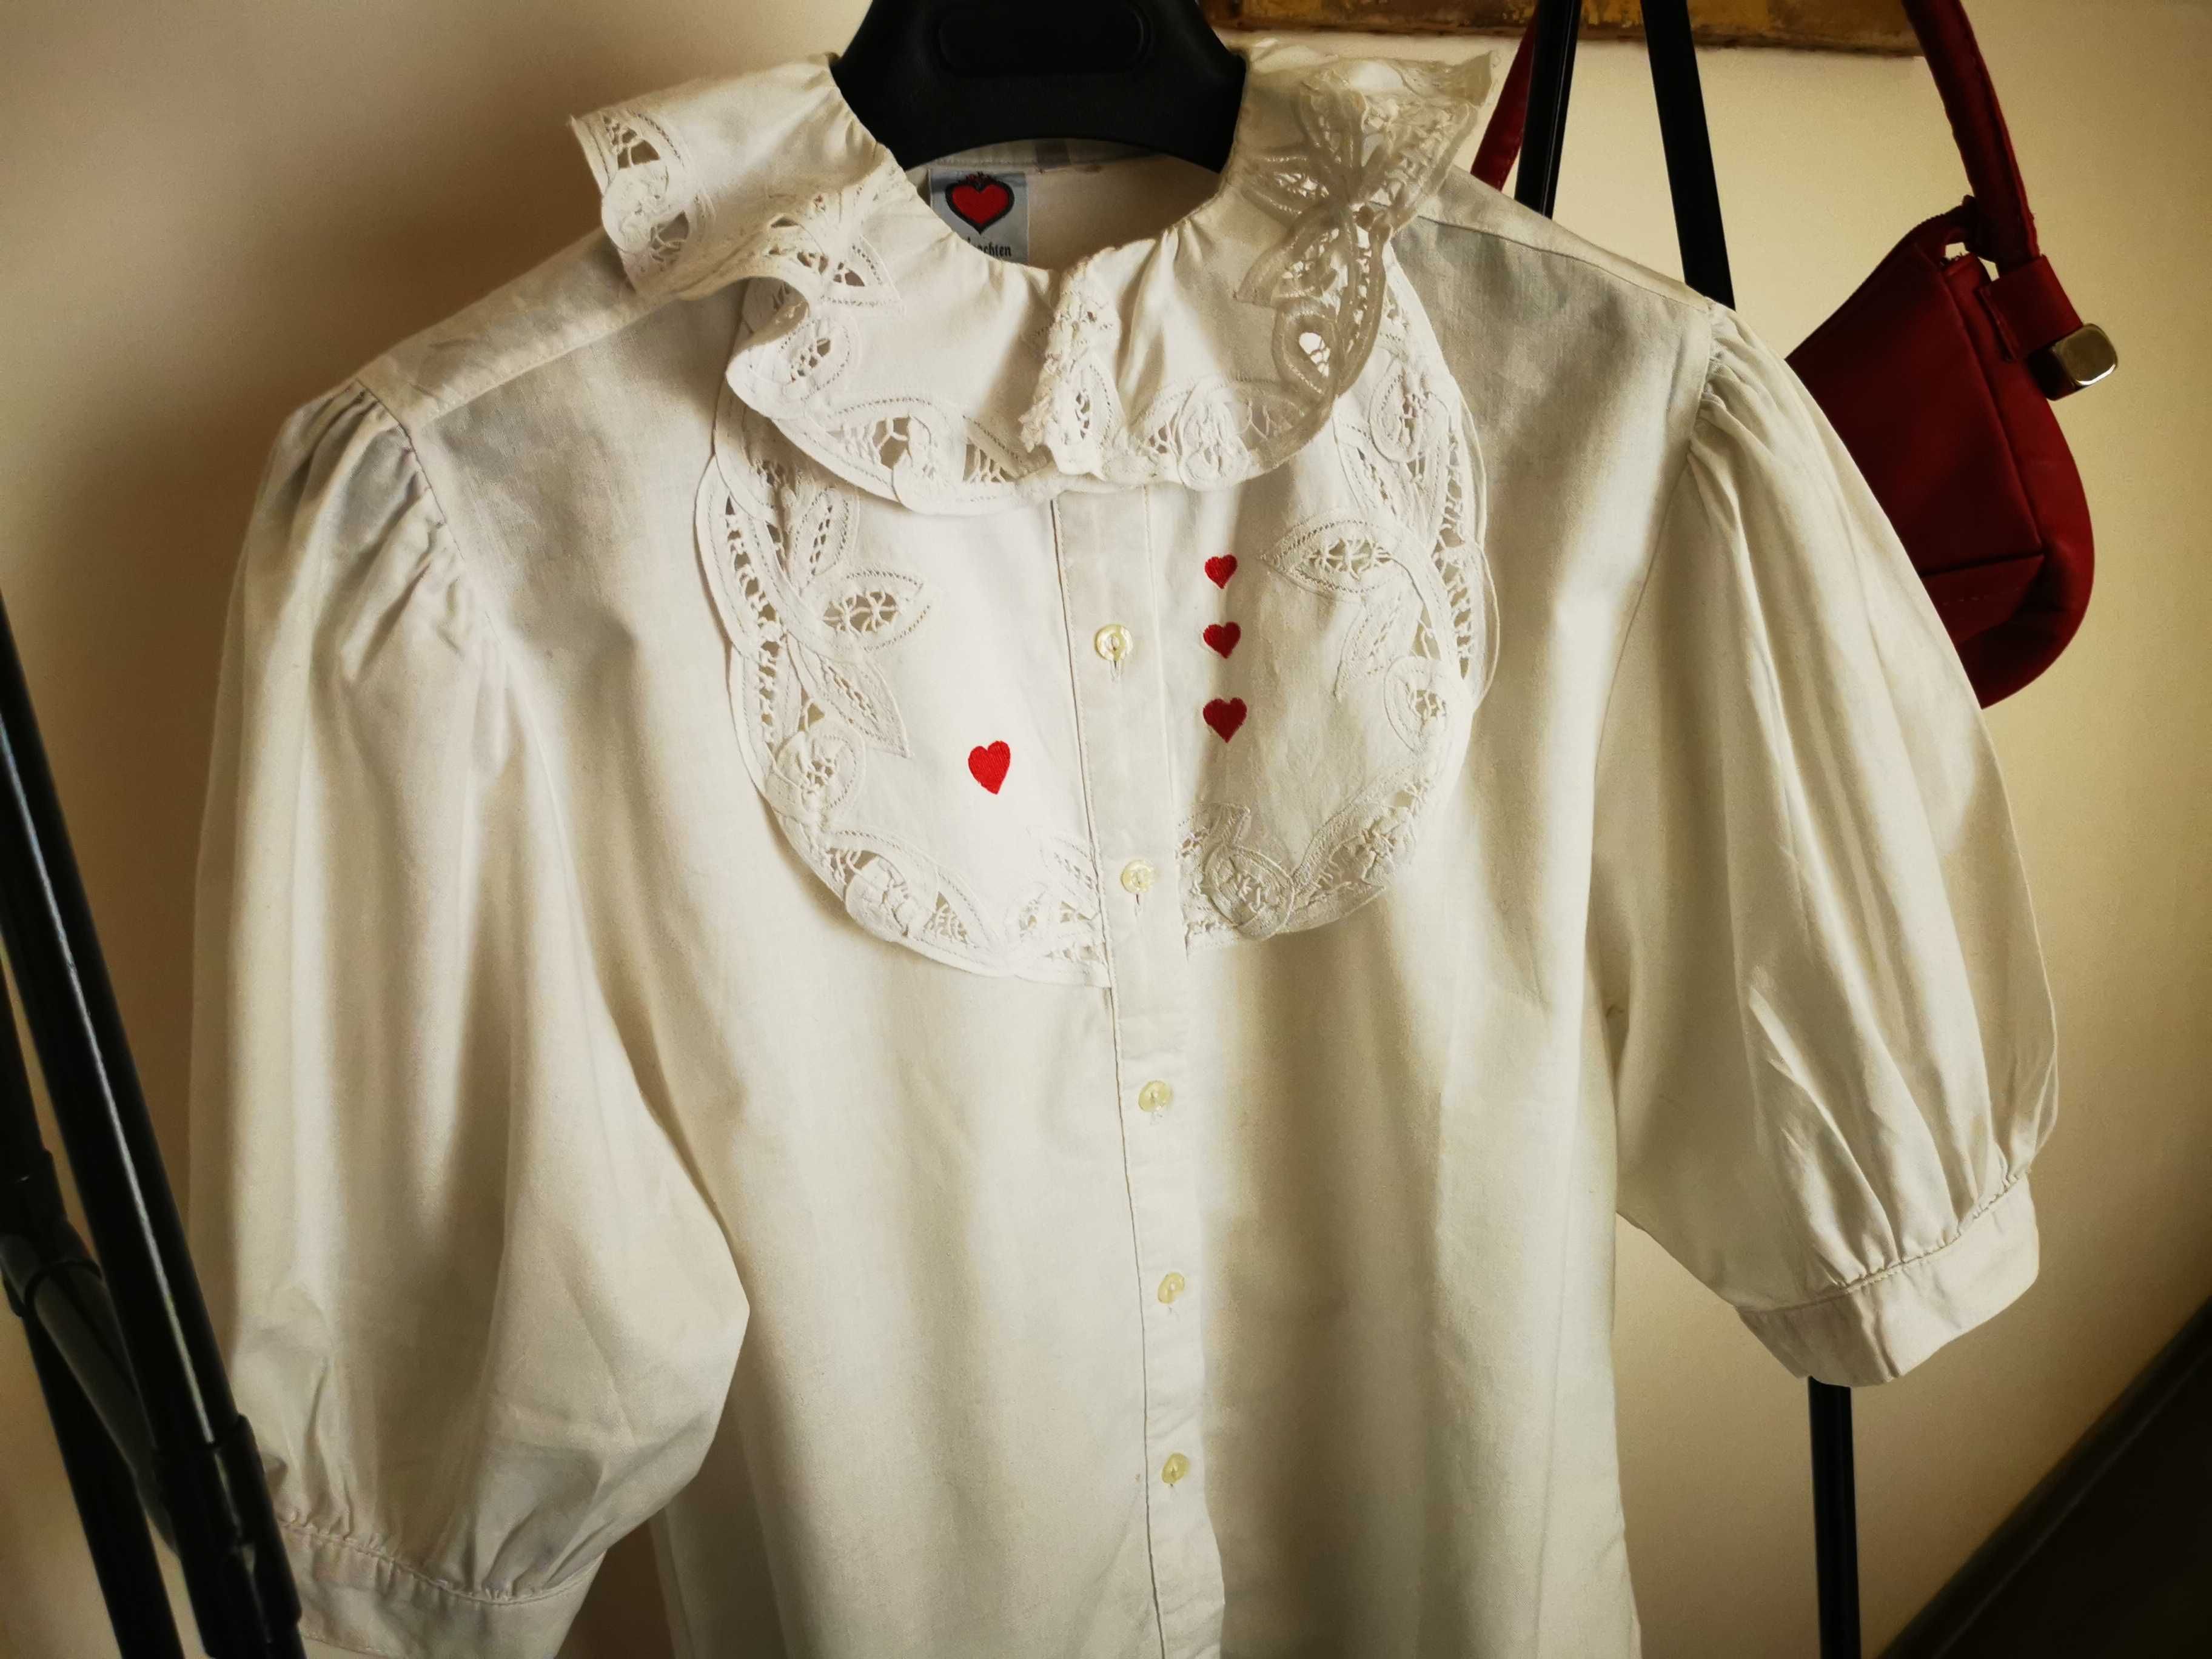 Superbă camasa vintage în stil victorian cu broderie